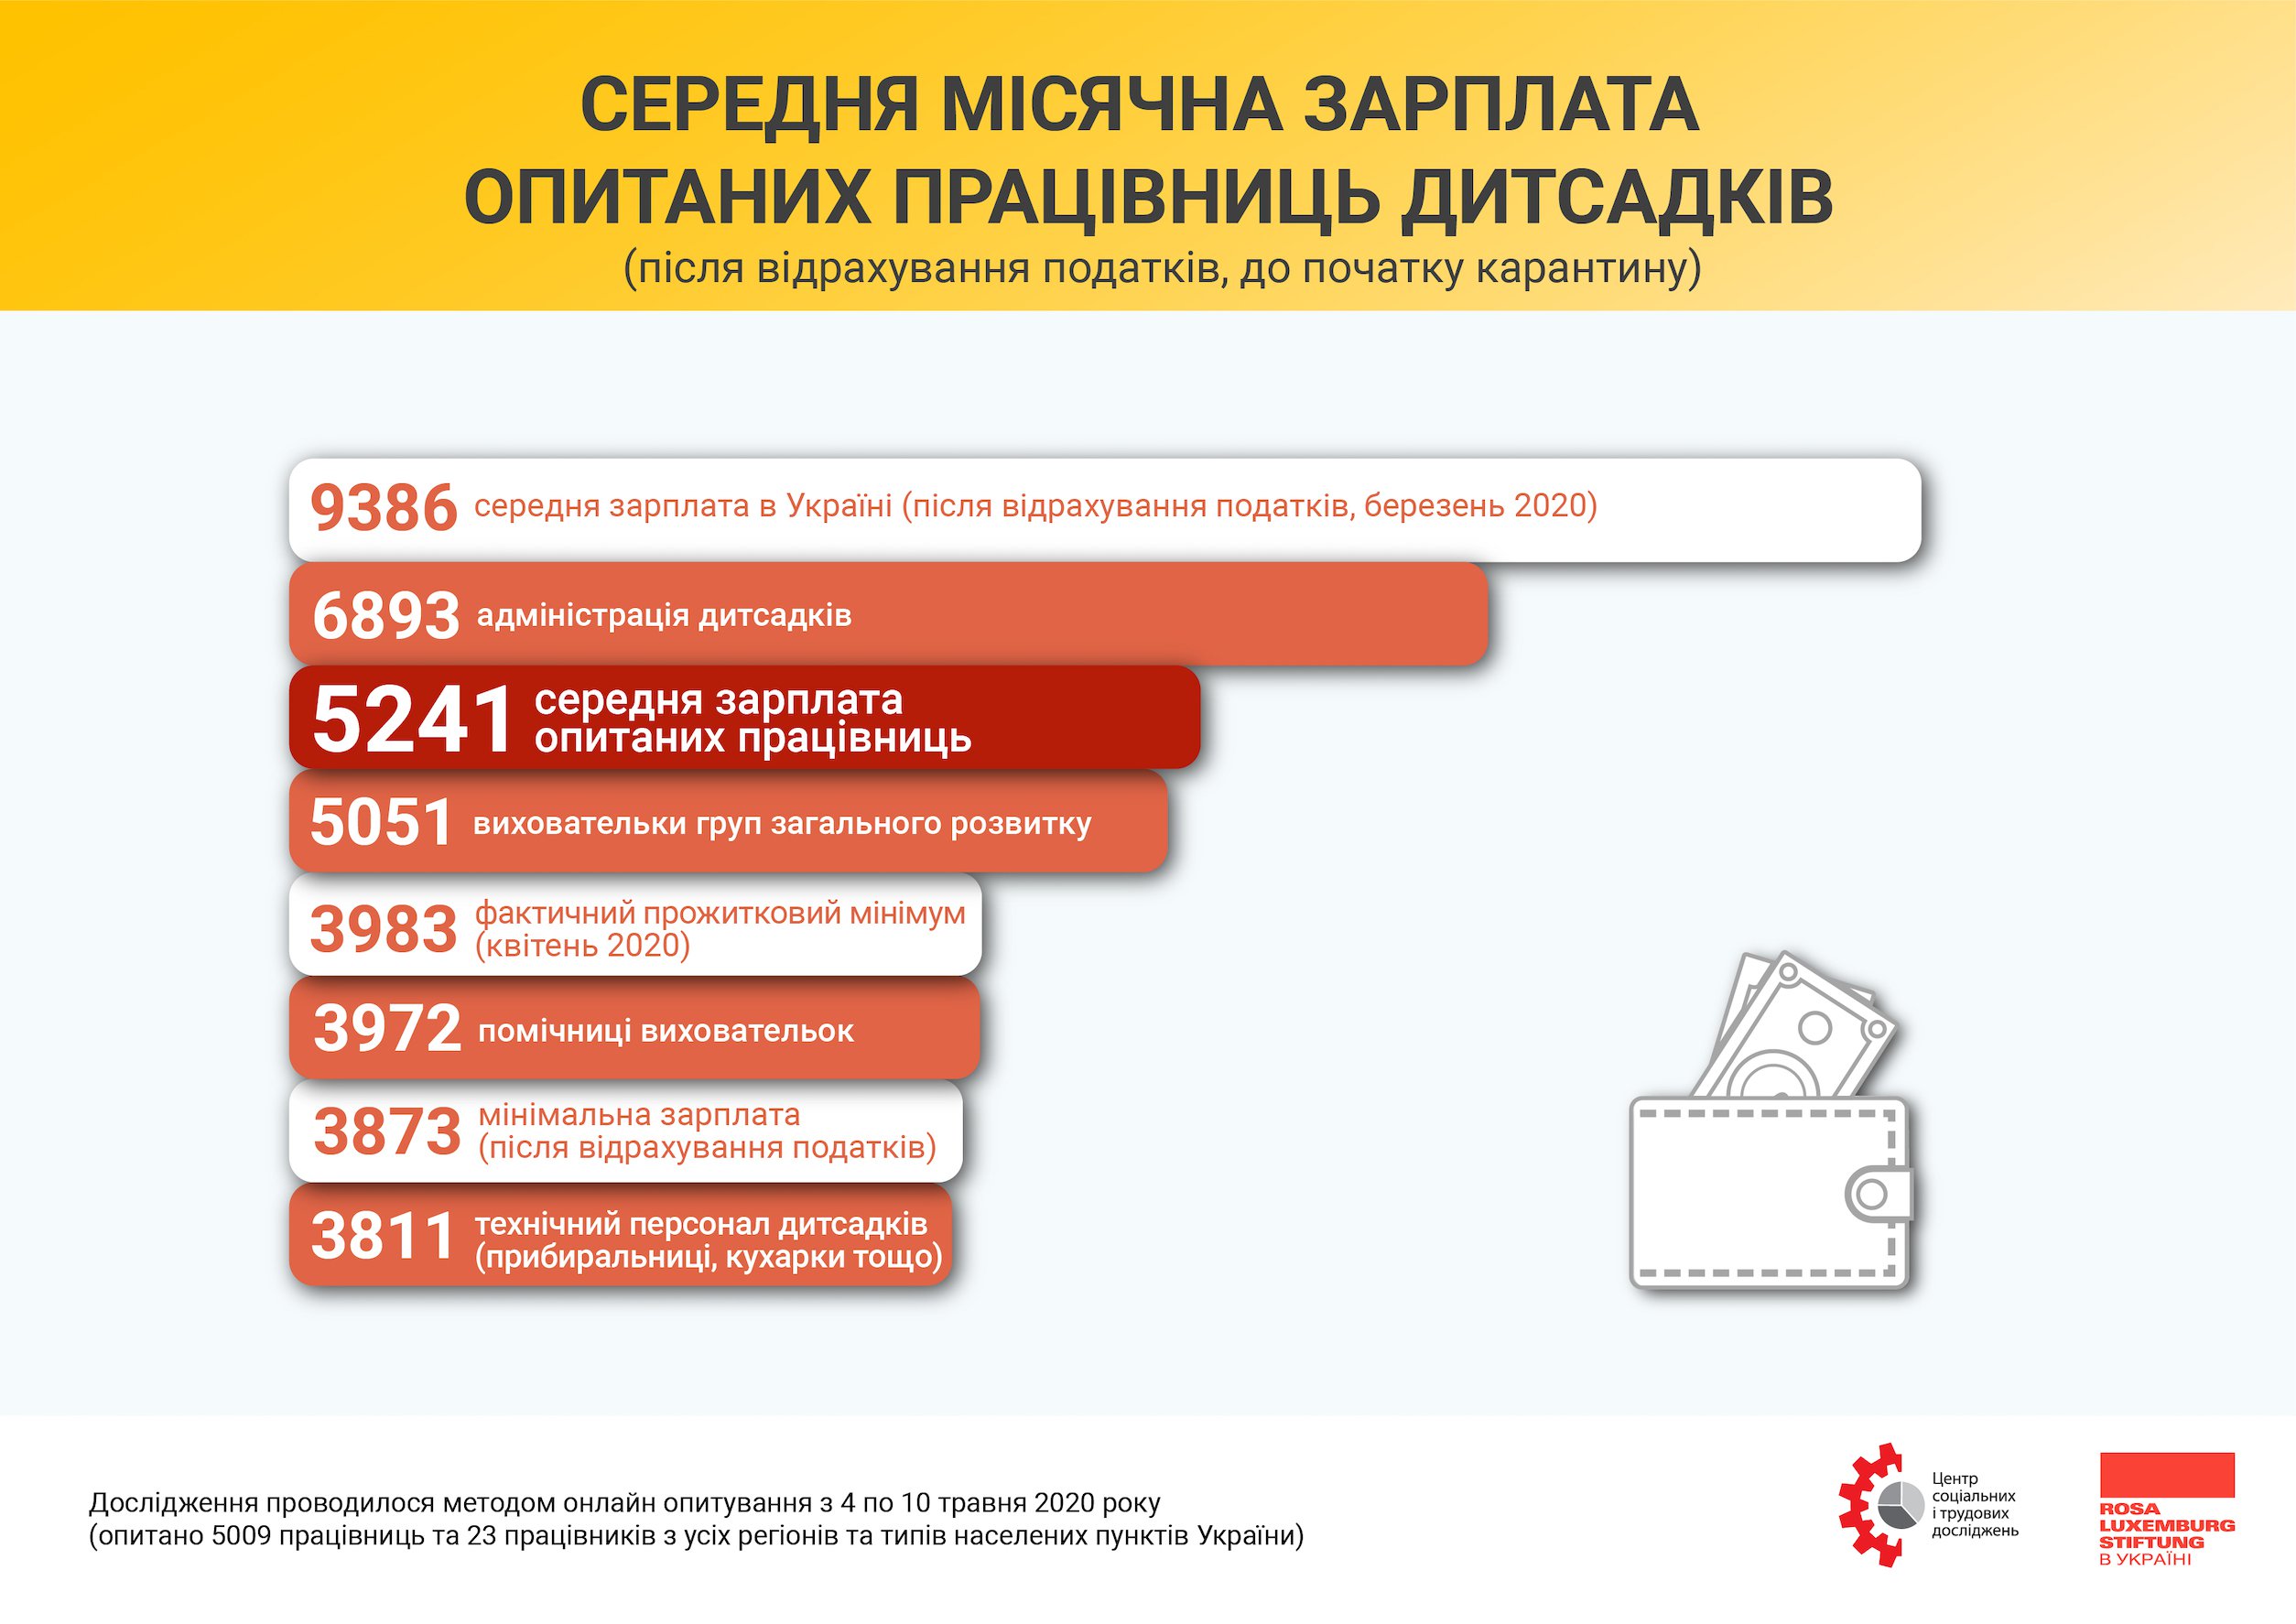 Навіть у адміністрації в дитсадках, яка має найвищу зарплатню по галузі, зарплатня нижча за середню по Україні: інфографіка авторів дослідження